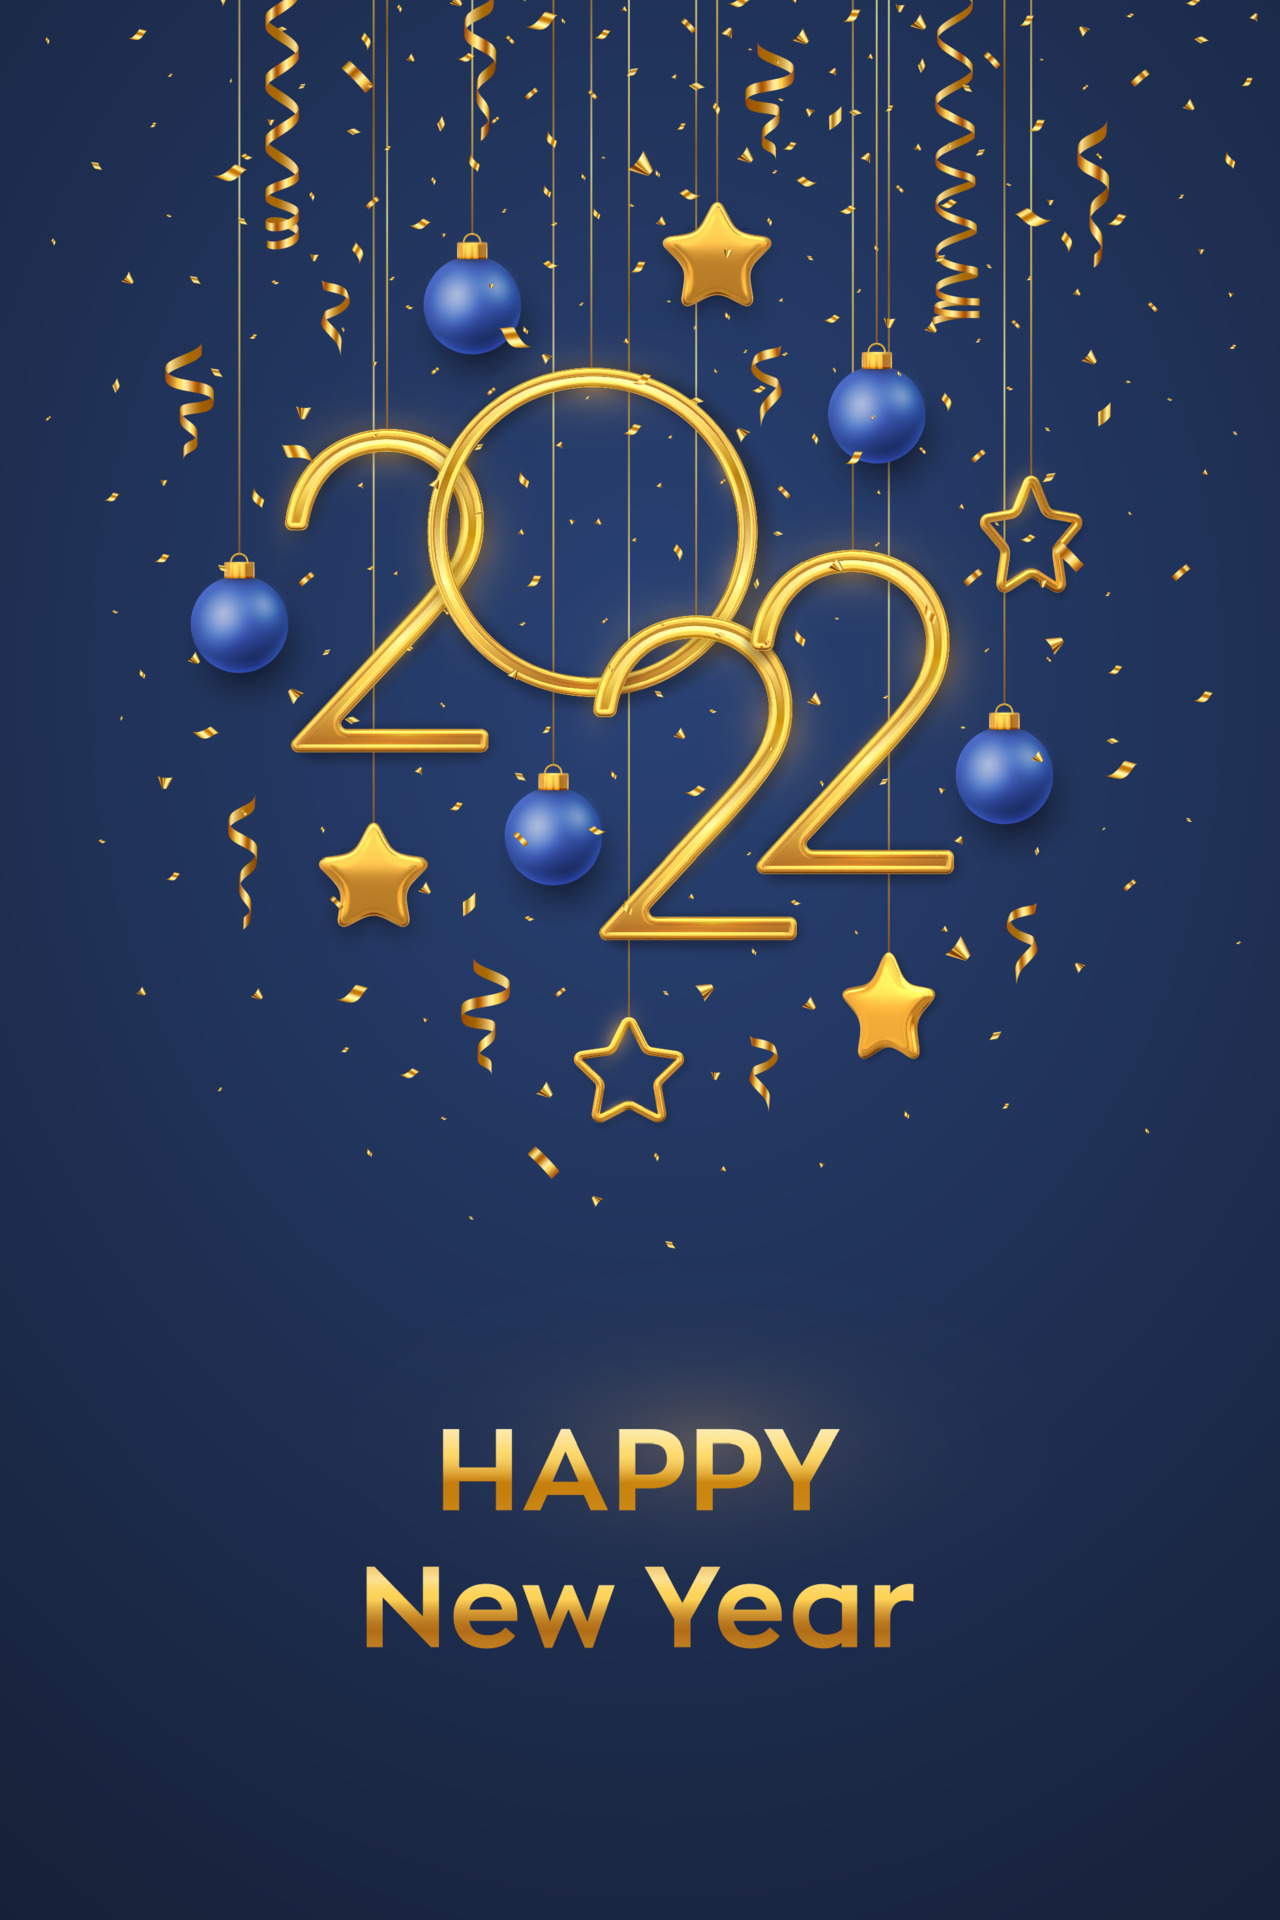 Số đúc mạ vàng 2022 treo trên nền màu xanh chúc mừng năm mới mang đến ý nghĩa may mắn và tài lộc cho gia đình ban. Hãy đến và xem hình ảnh để cảm nhận sự may mắn và thịnh vượng cùng với gam màu trầm lắng của đêm Tết.